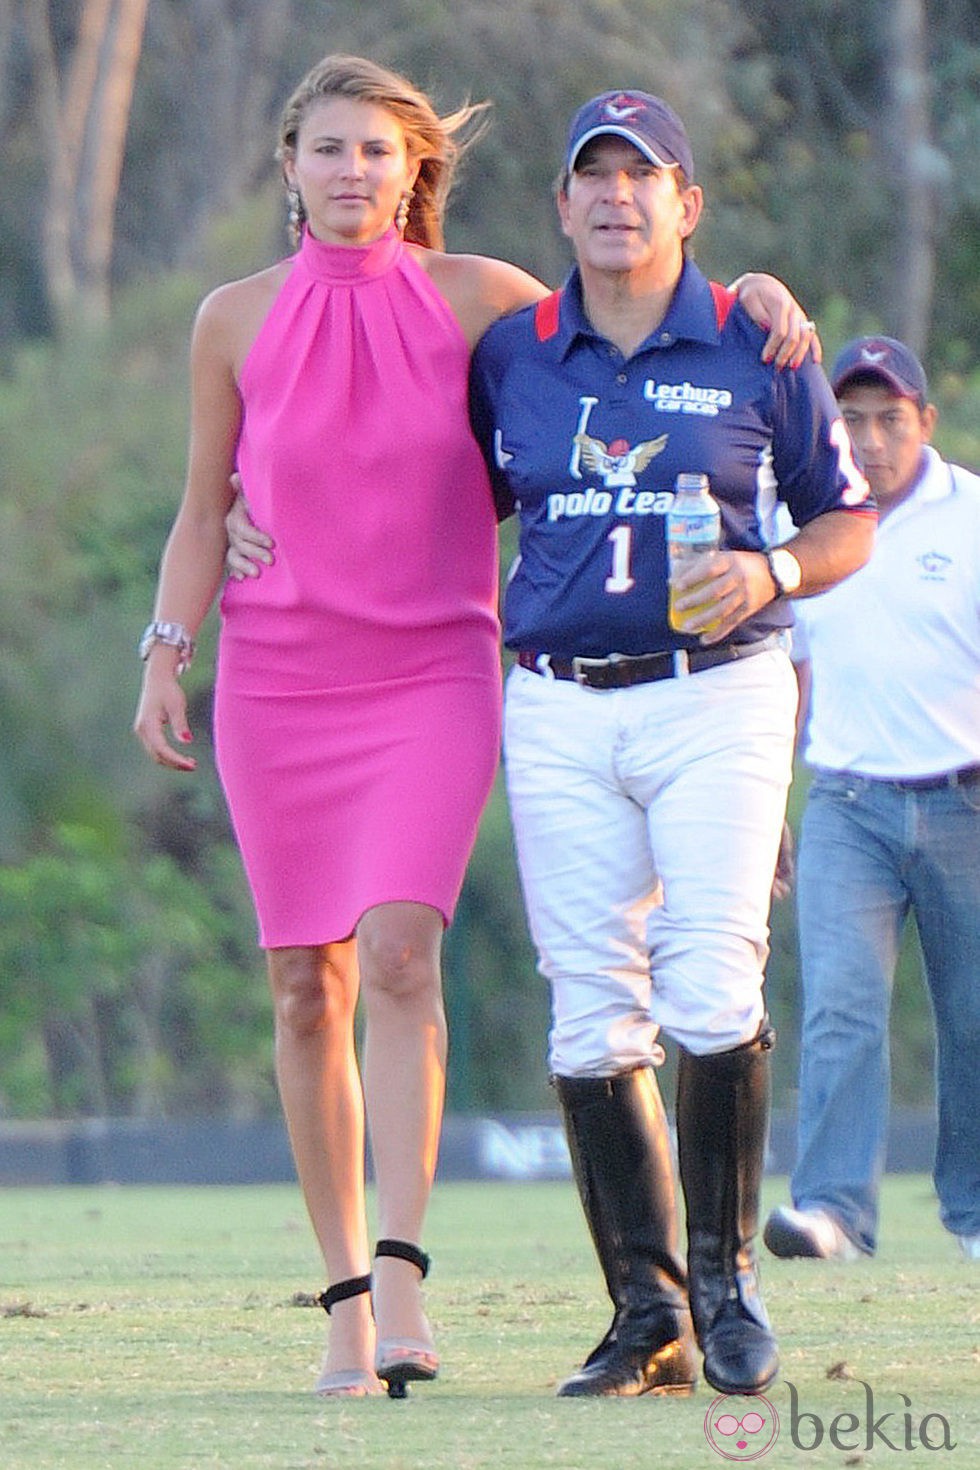 Víctor Vargas y Beatriz Hernández en el Torneo Internacional de Polo de Sotogrande